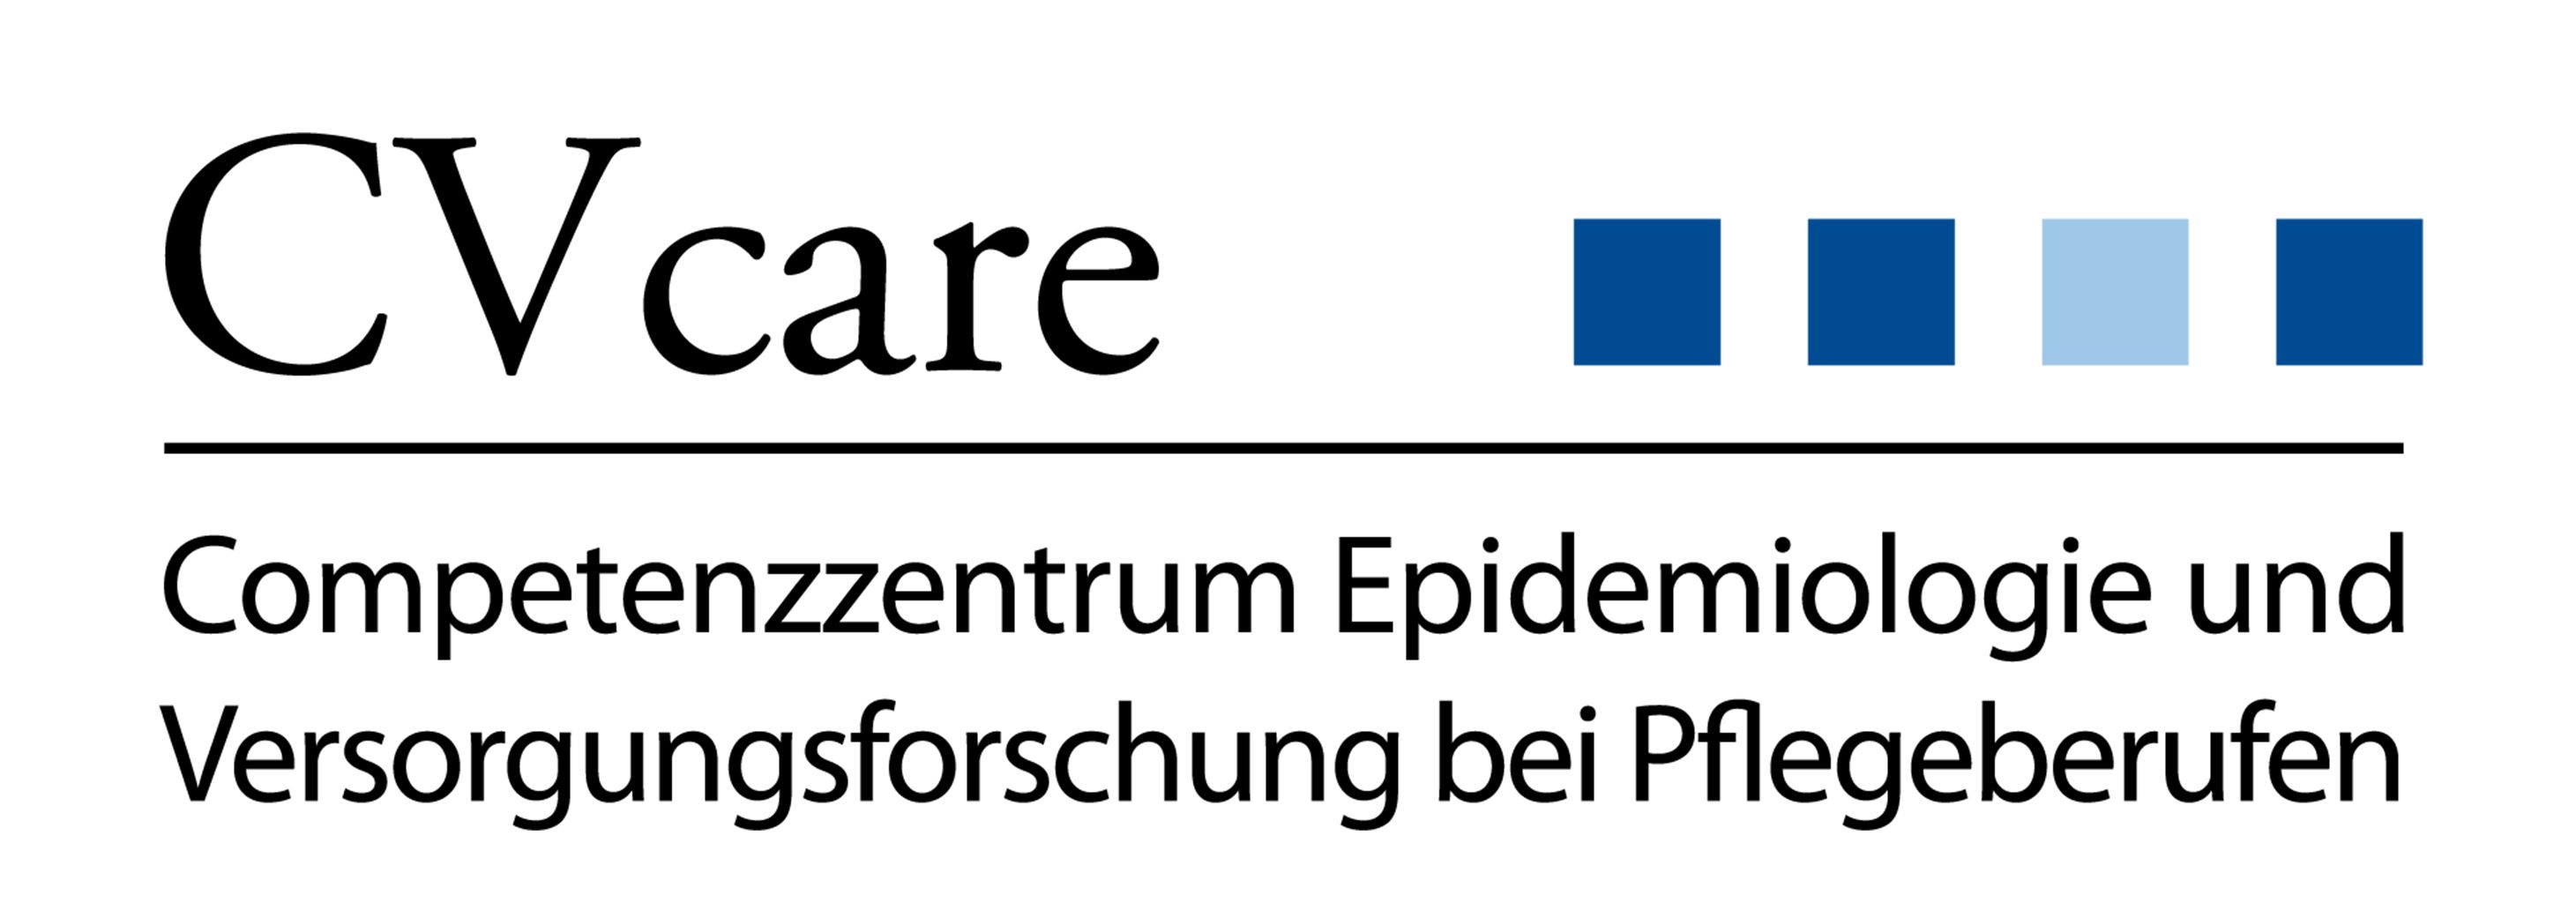 Logo: CV Care - Competenzzentrum Epidemiologie und Versorgungsforschung bei Pflegeberufen